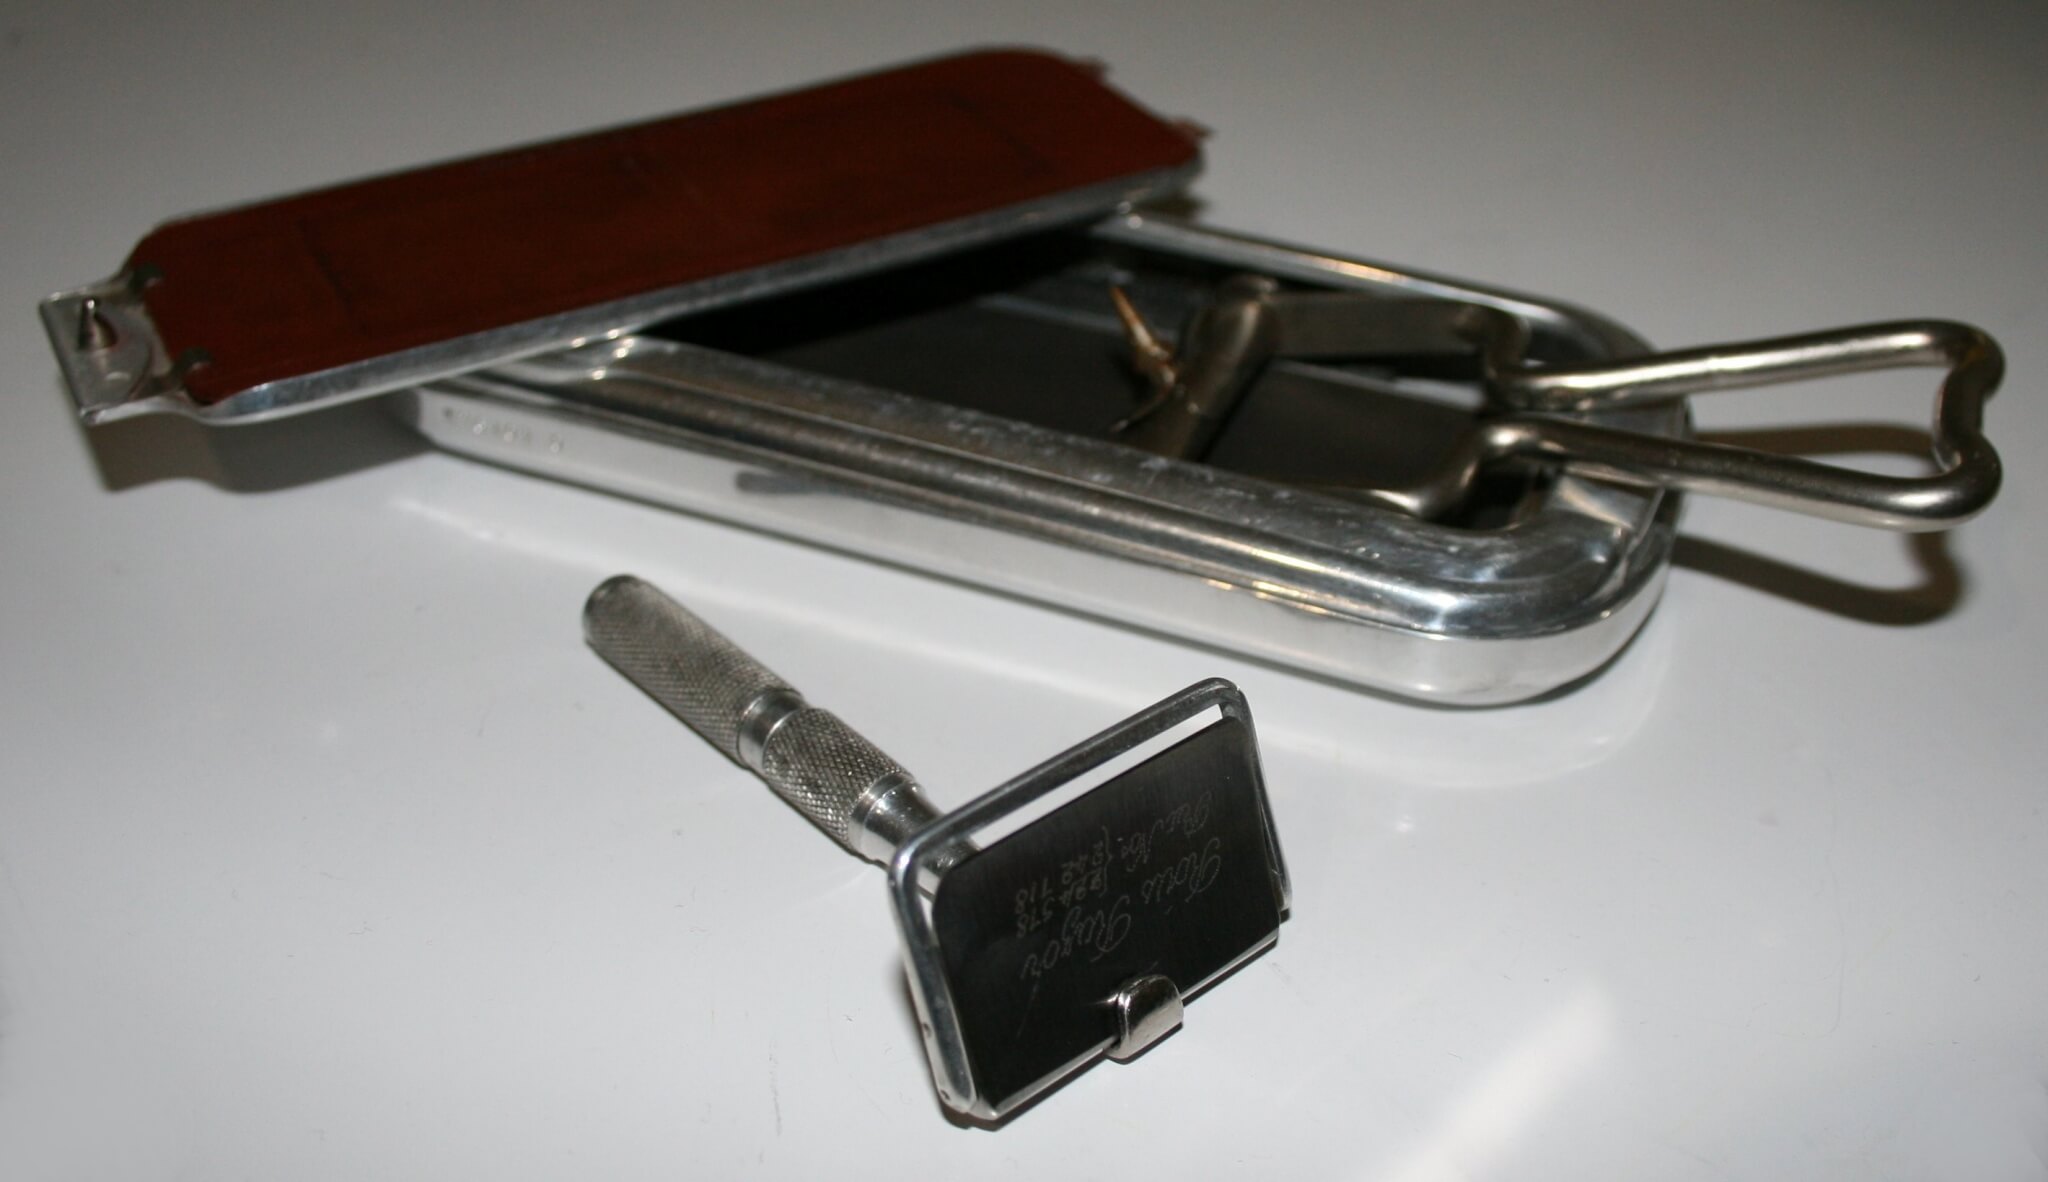 Vintage Rolls Safety Razor Blade Sharpener